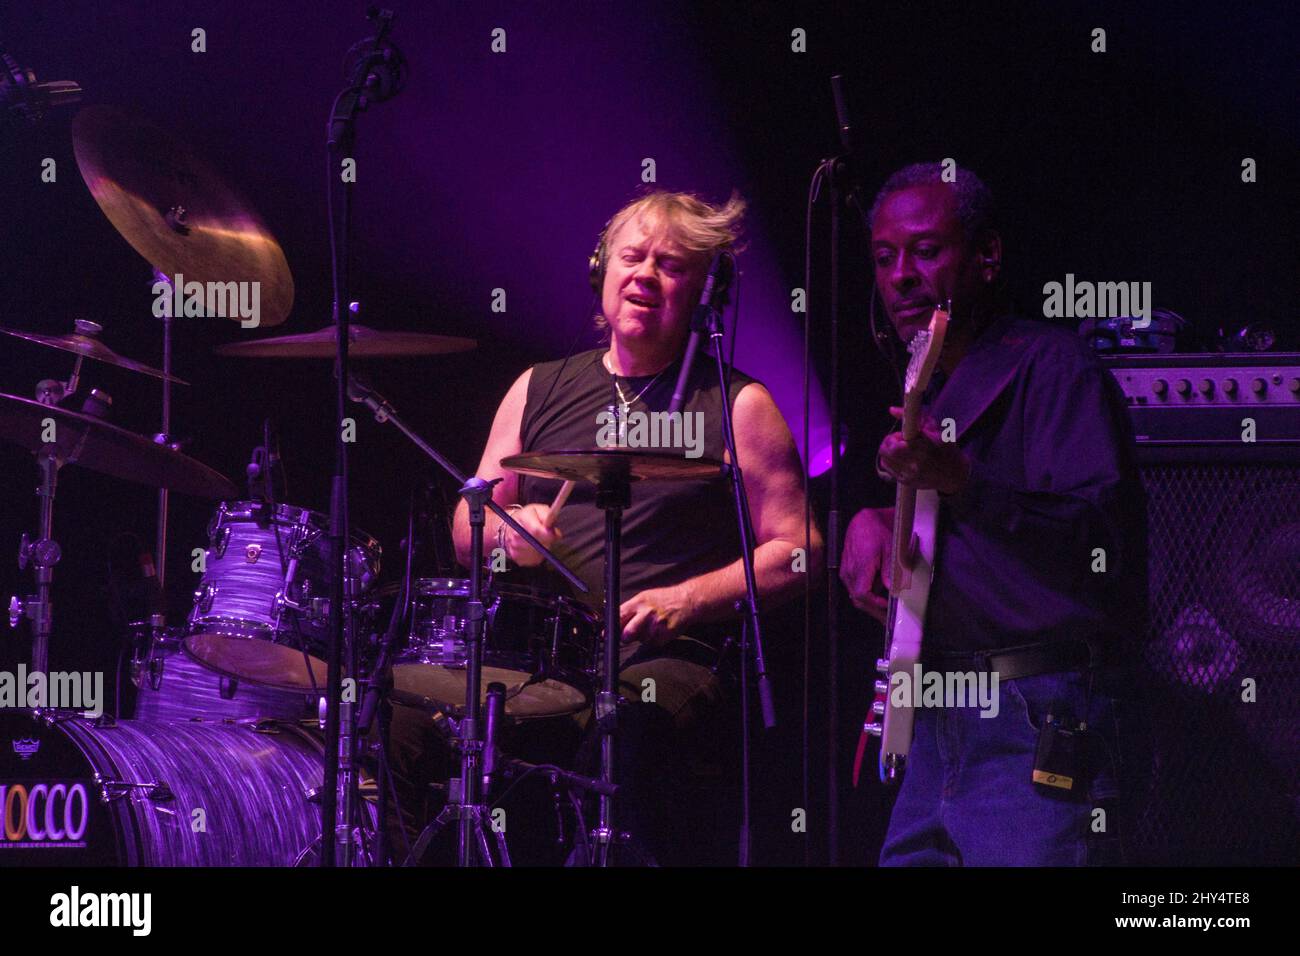 Le batteur américain Tom Hambridge et le bassiste Orlando Wright se présentant avec le groupe Buddy Guy's Damn Right à la salle Pleyel, Paris, France, le 6 novembre 2018. Banque D'Images